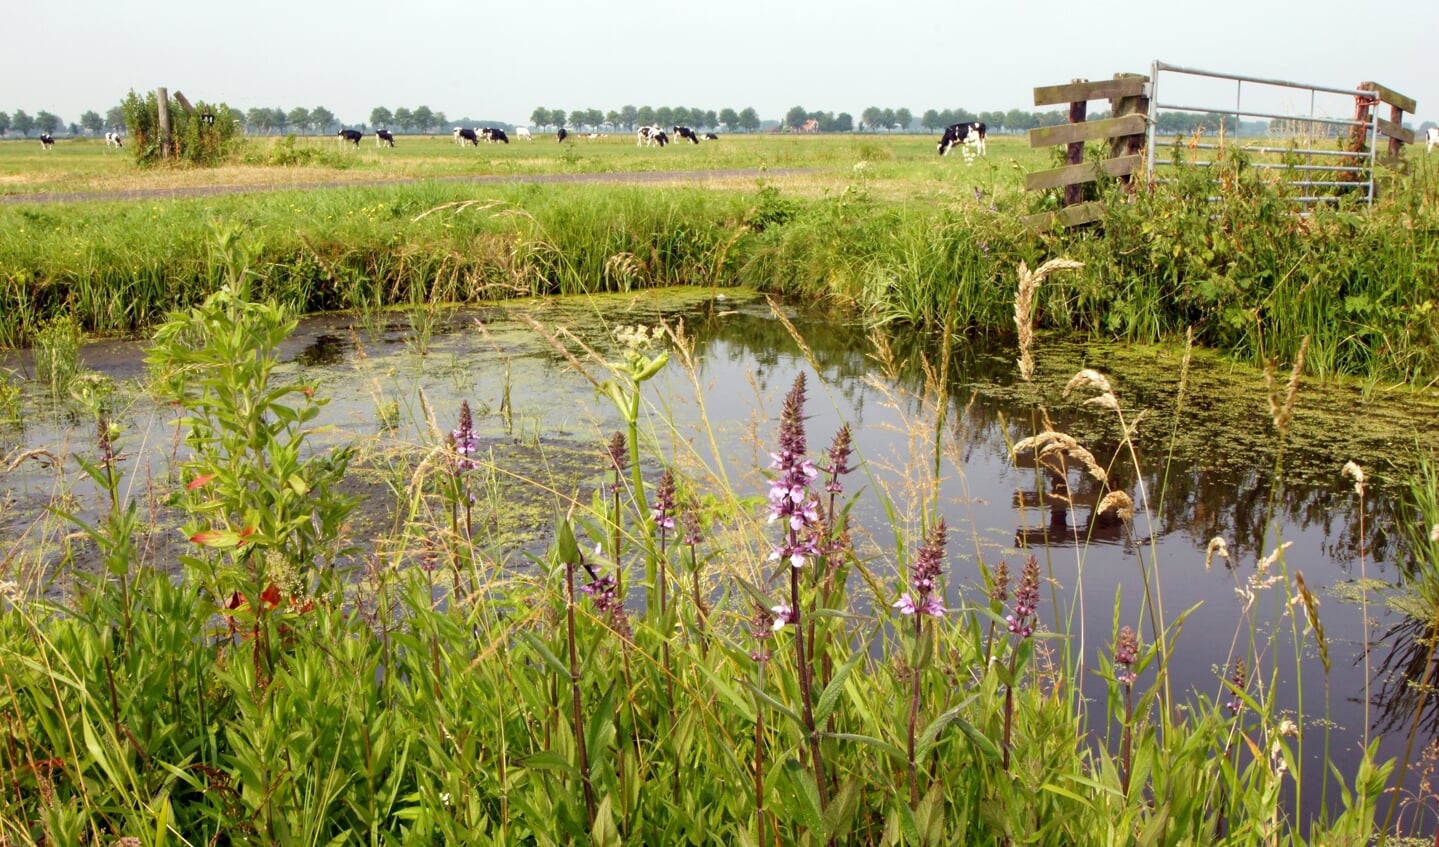 Het doel van de samenwerking is het agrarische bedrijf en het watersysteem in Noord-Holland gezonder en veerkrachtiger te maken wat betreft waterkwaliteit, voldoende zoetwater en bodemkwaliteit. 